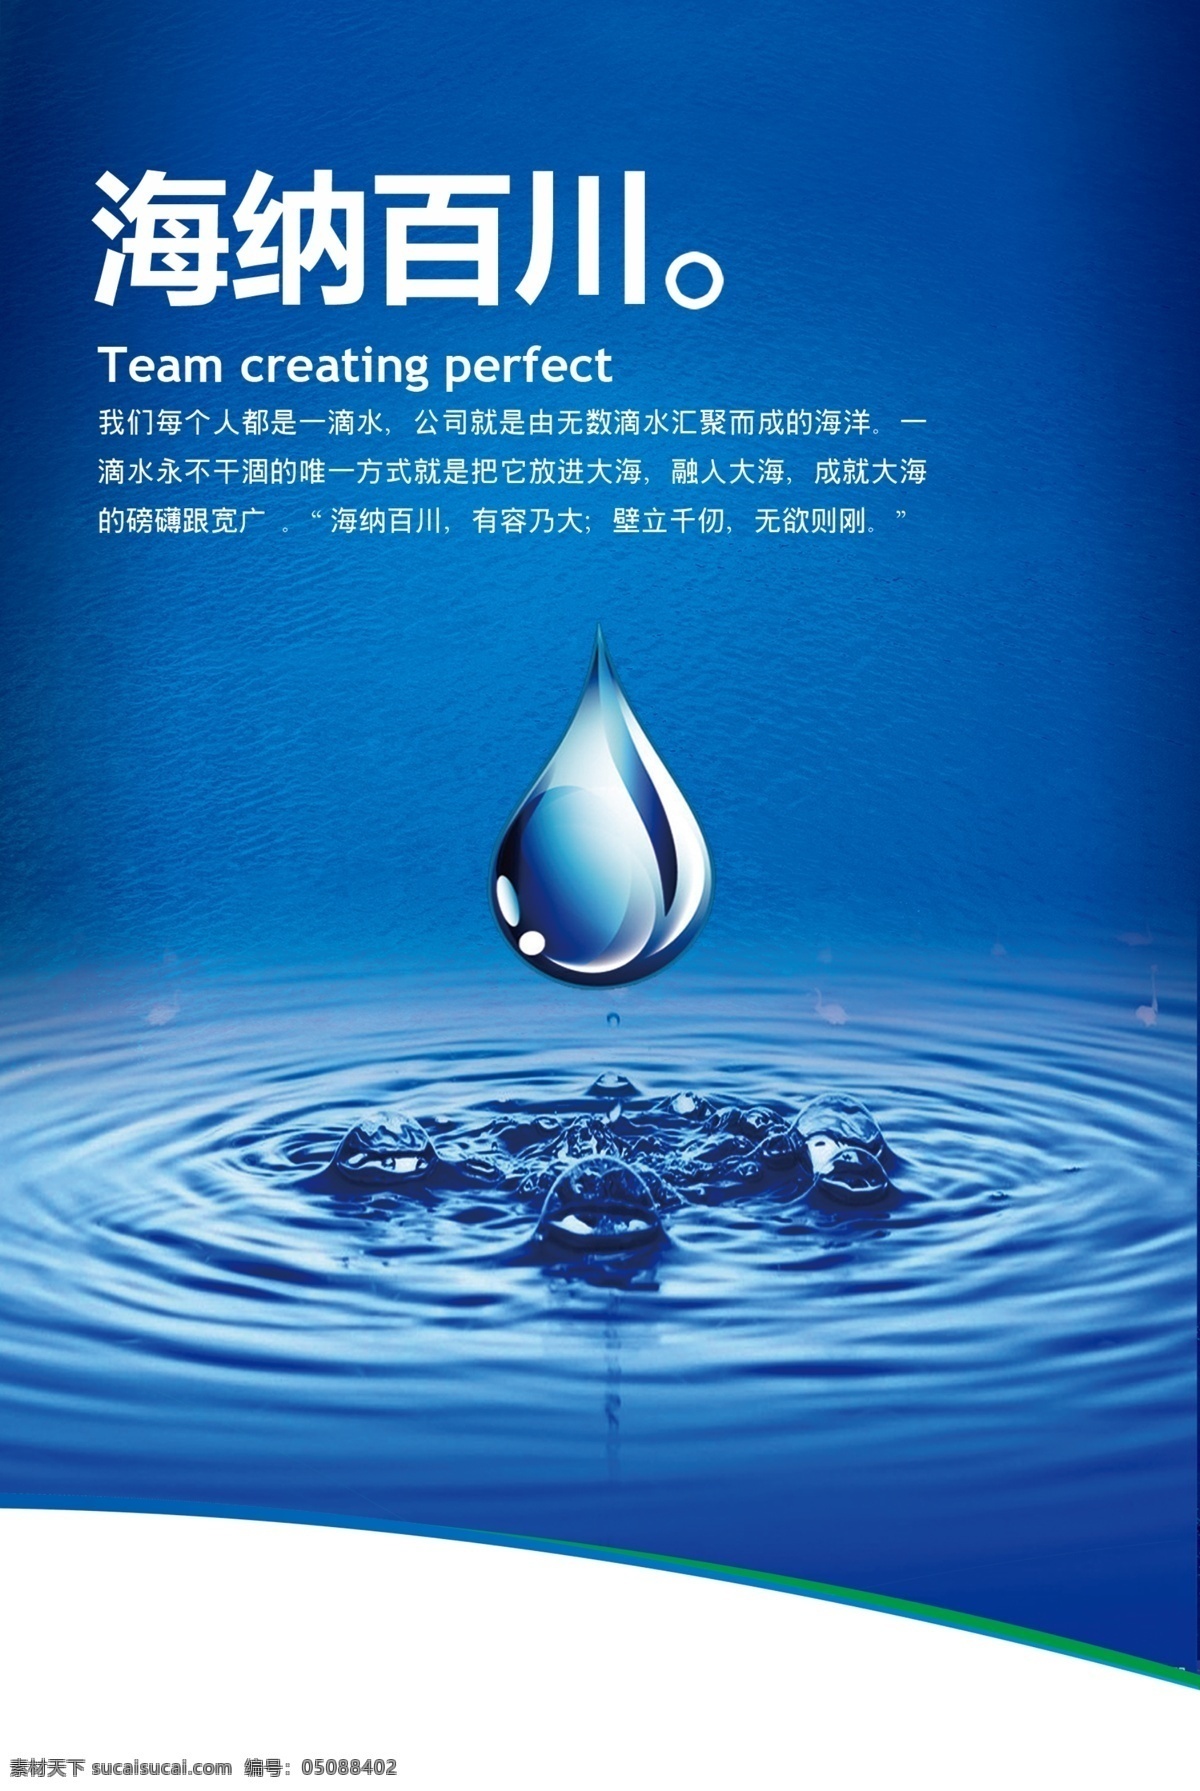 水滴海报 水滴 水素材 蓝色背景 企业文化 宣传画 大气 脱俗 海报